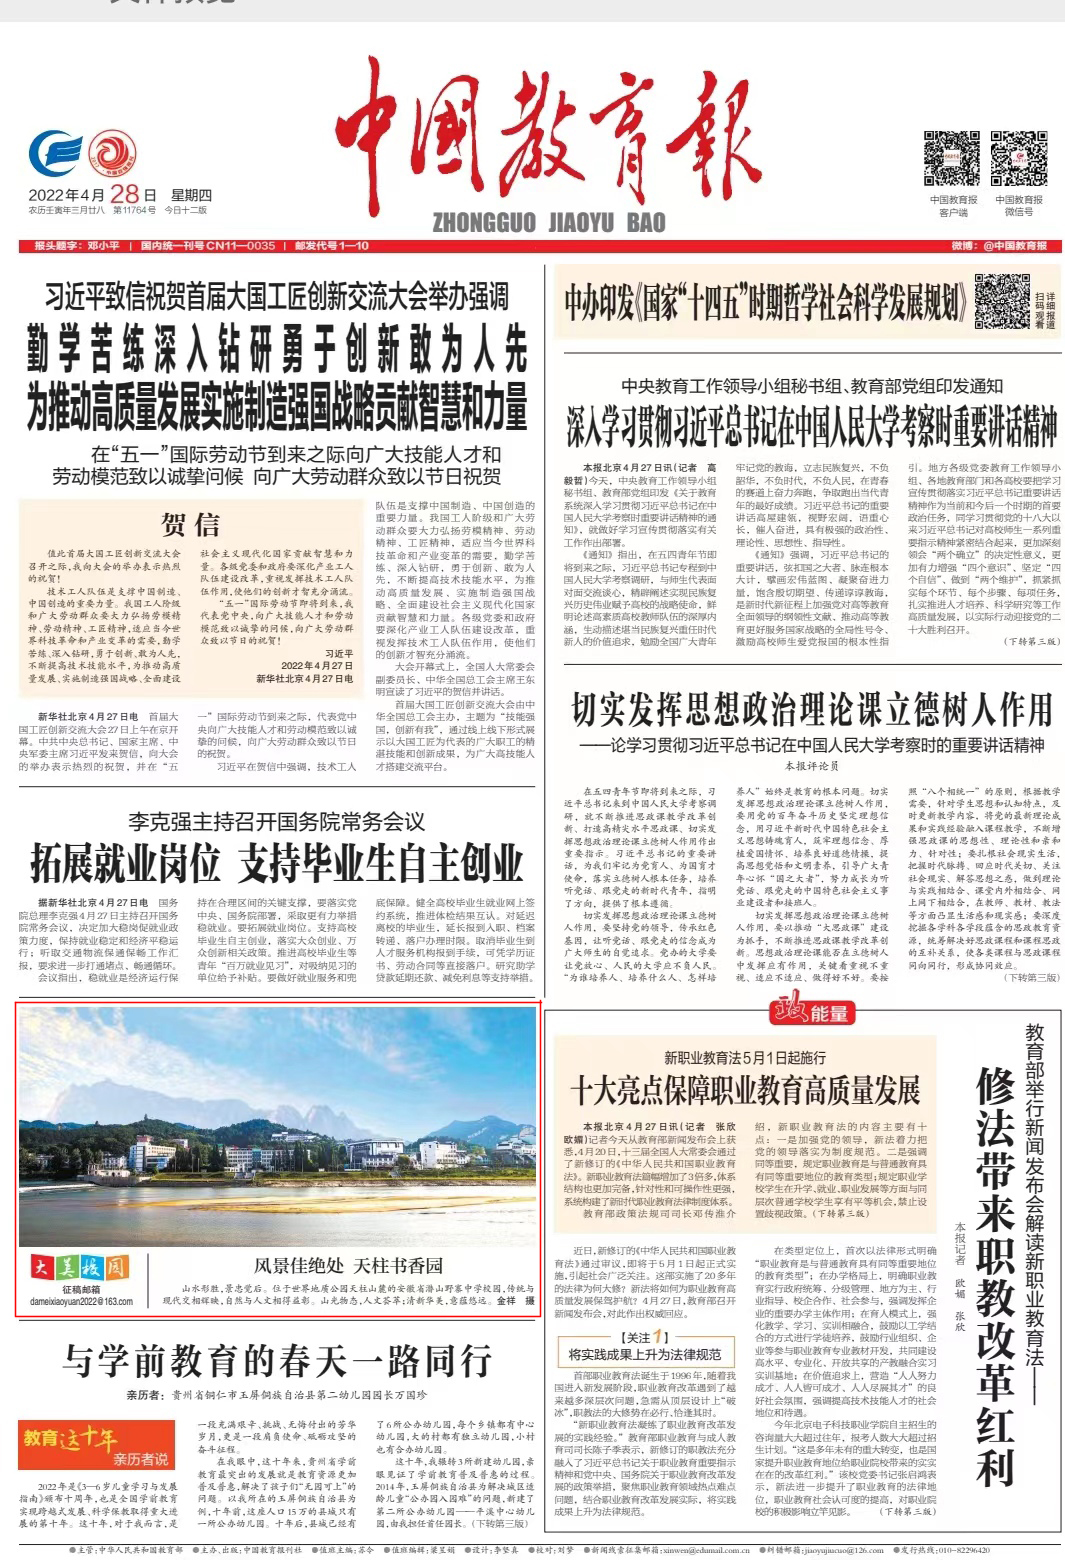 《中国教育报》头版刊登野寨中学全景照片